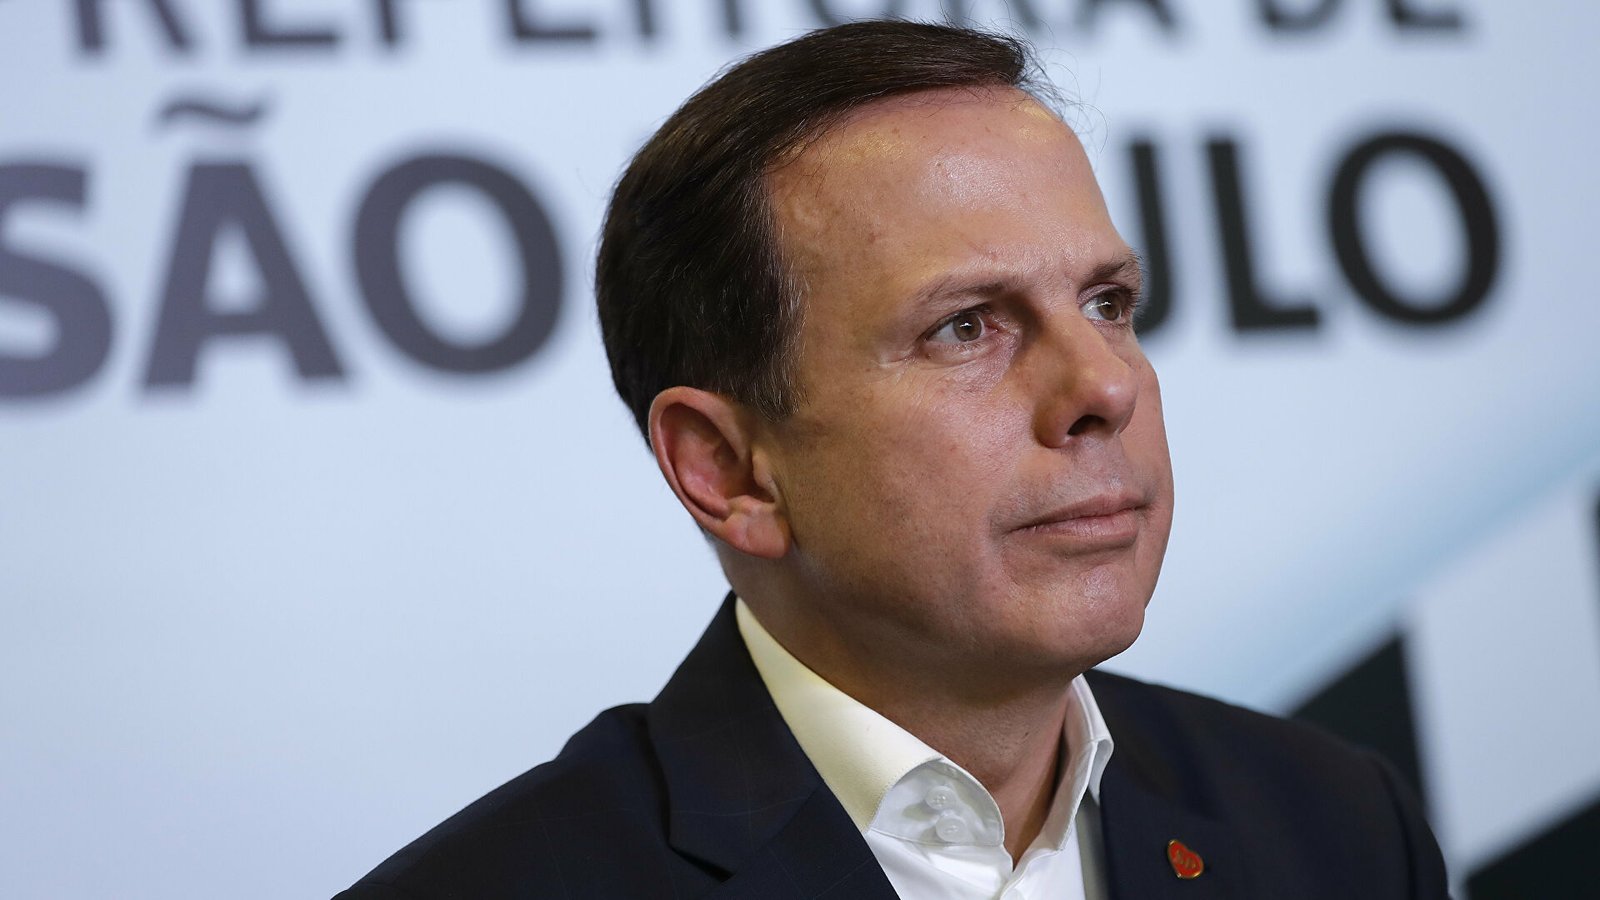 Confirma gobernador de Sao Paulo que aspira a la presidencia en el 2022